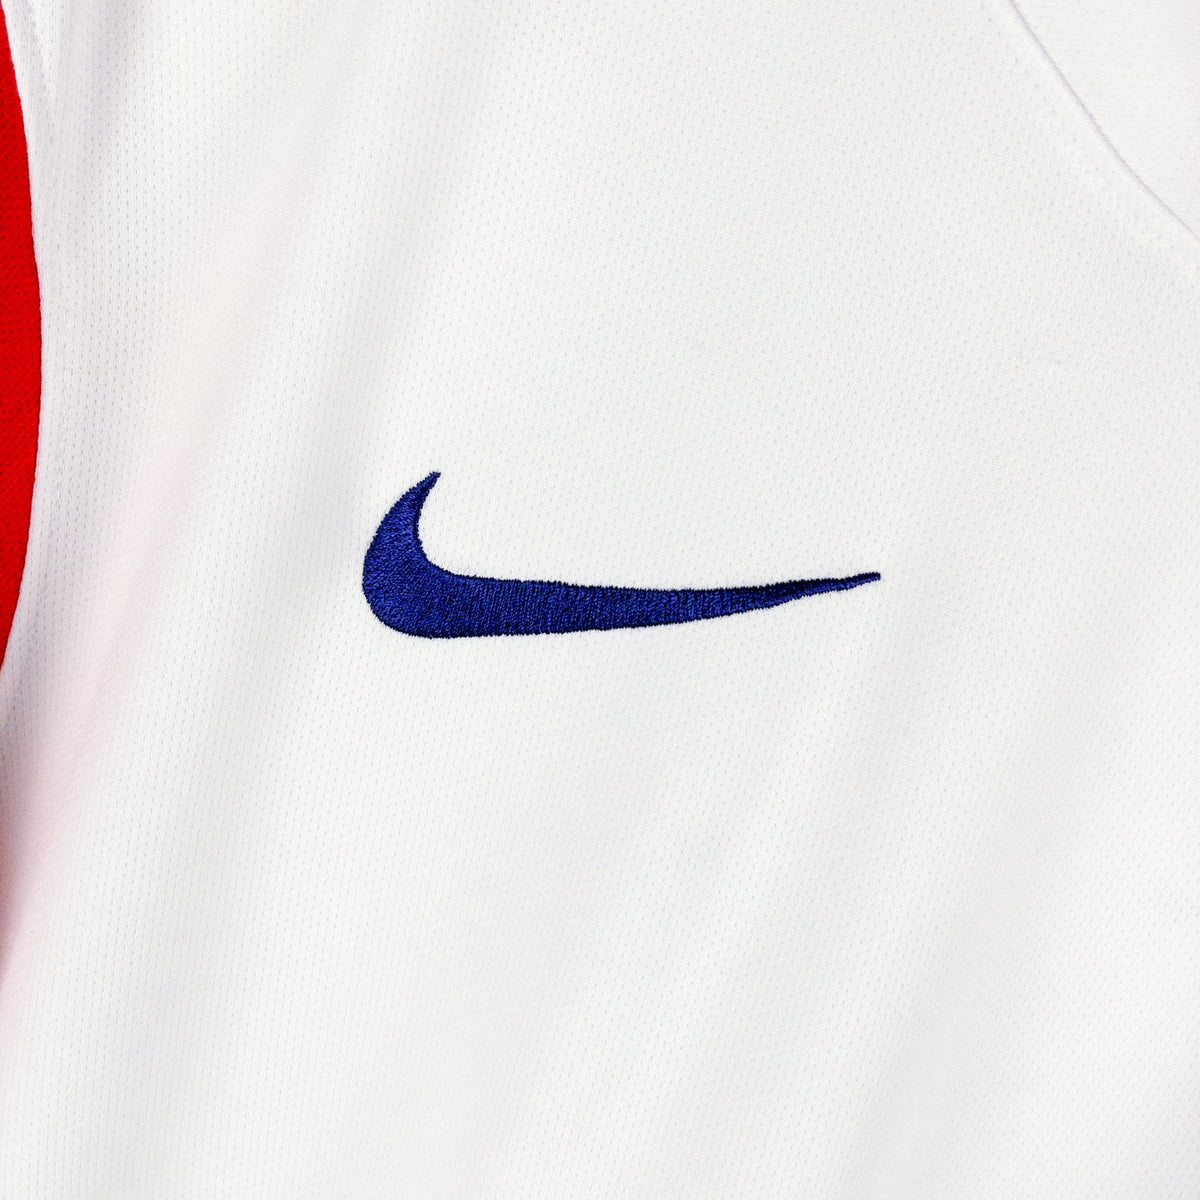 2014-2015 Korea Nike Away Shirt